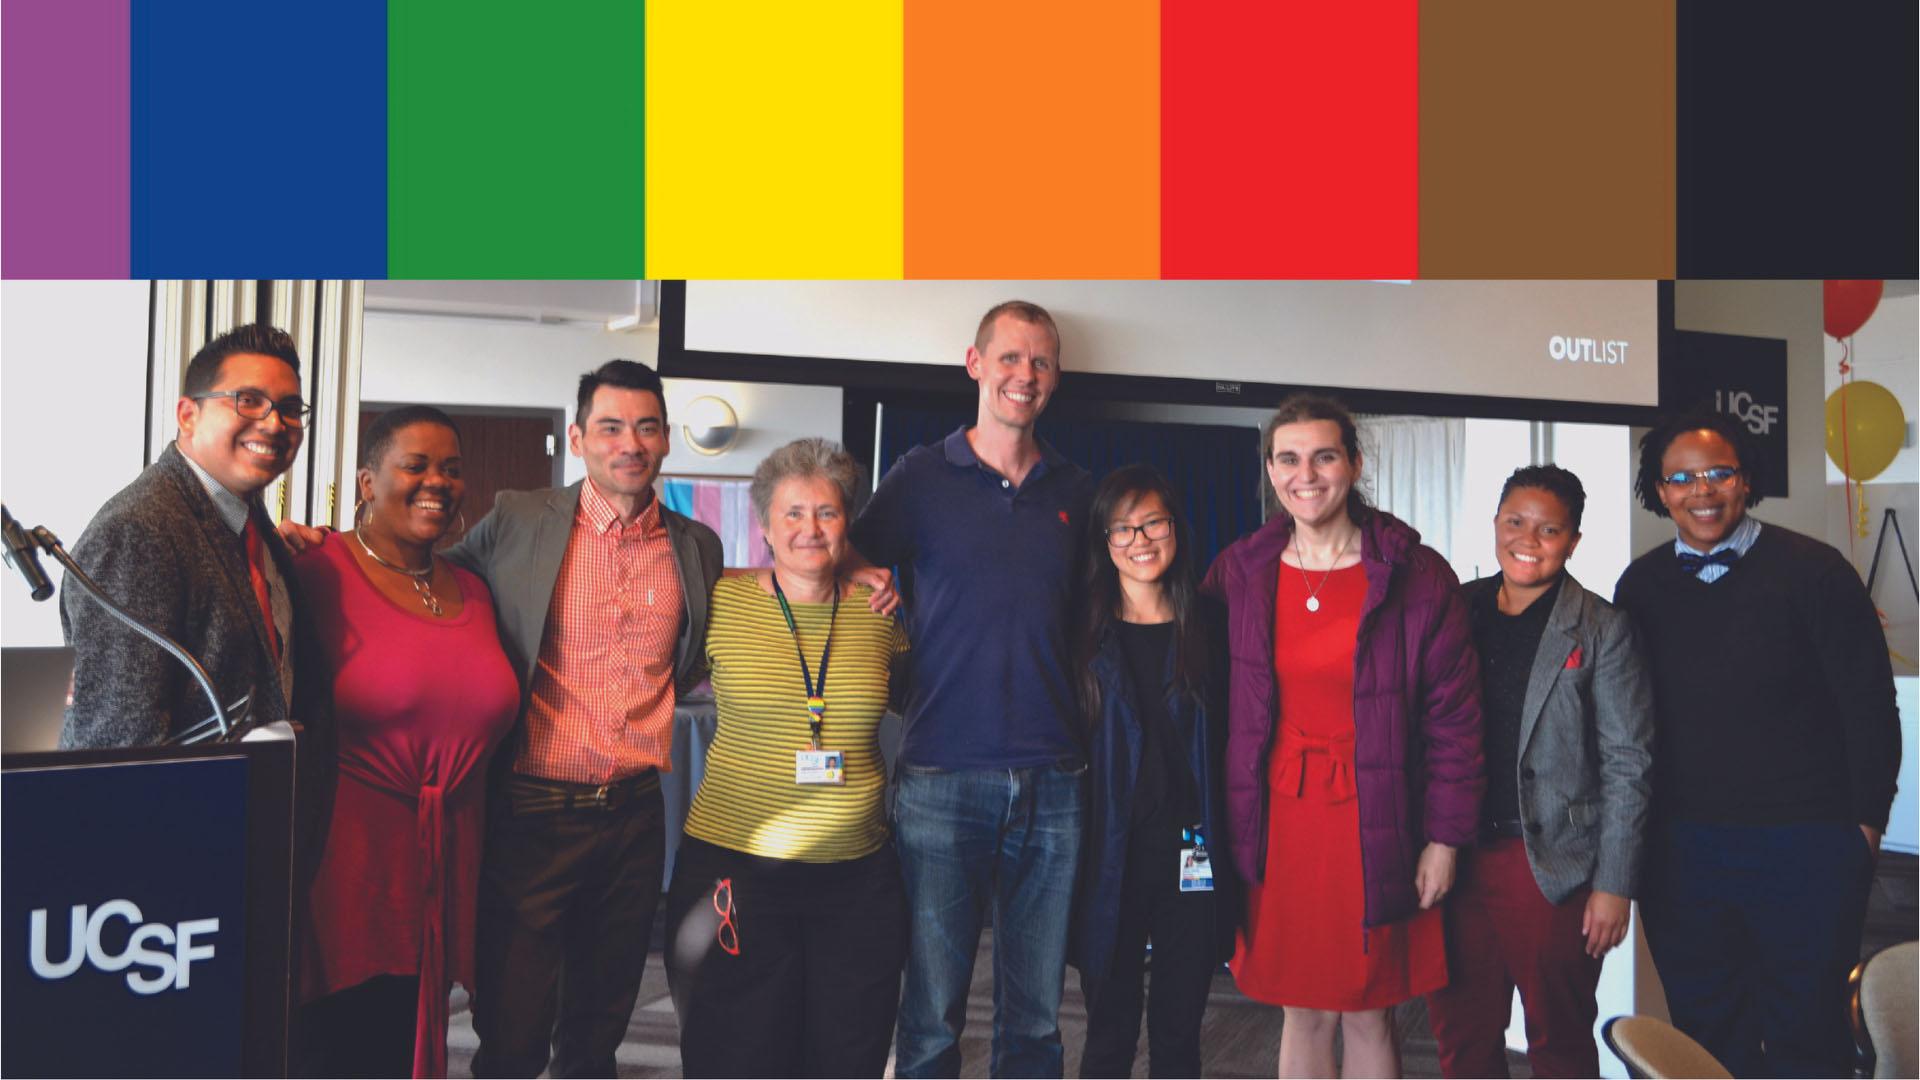 Nine members of the LGBTQ Committee